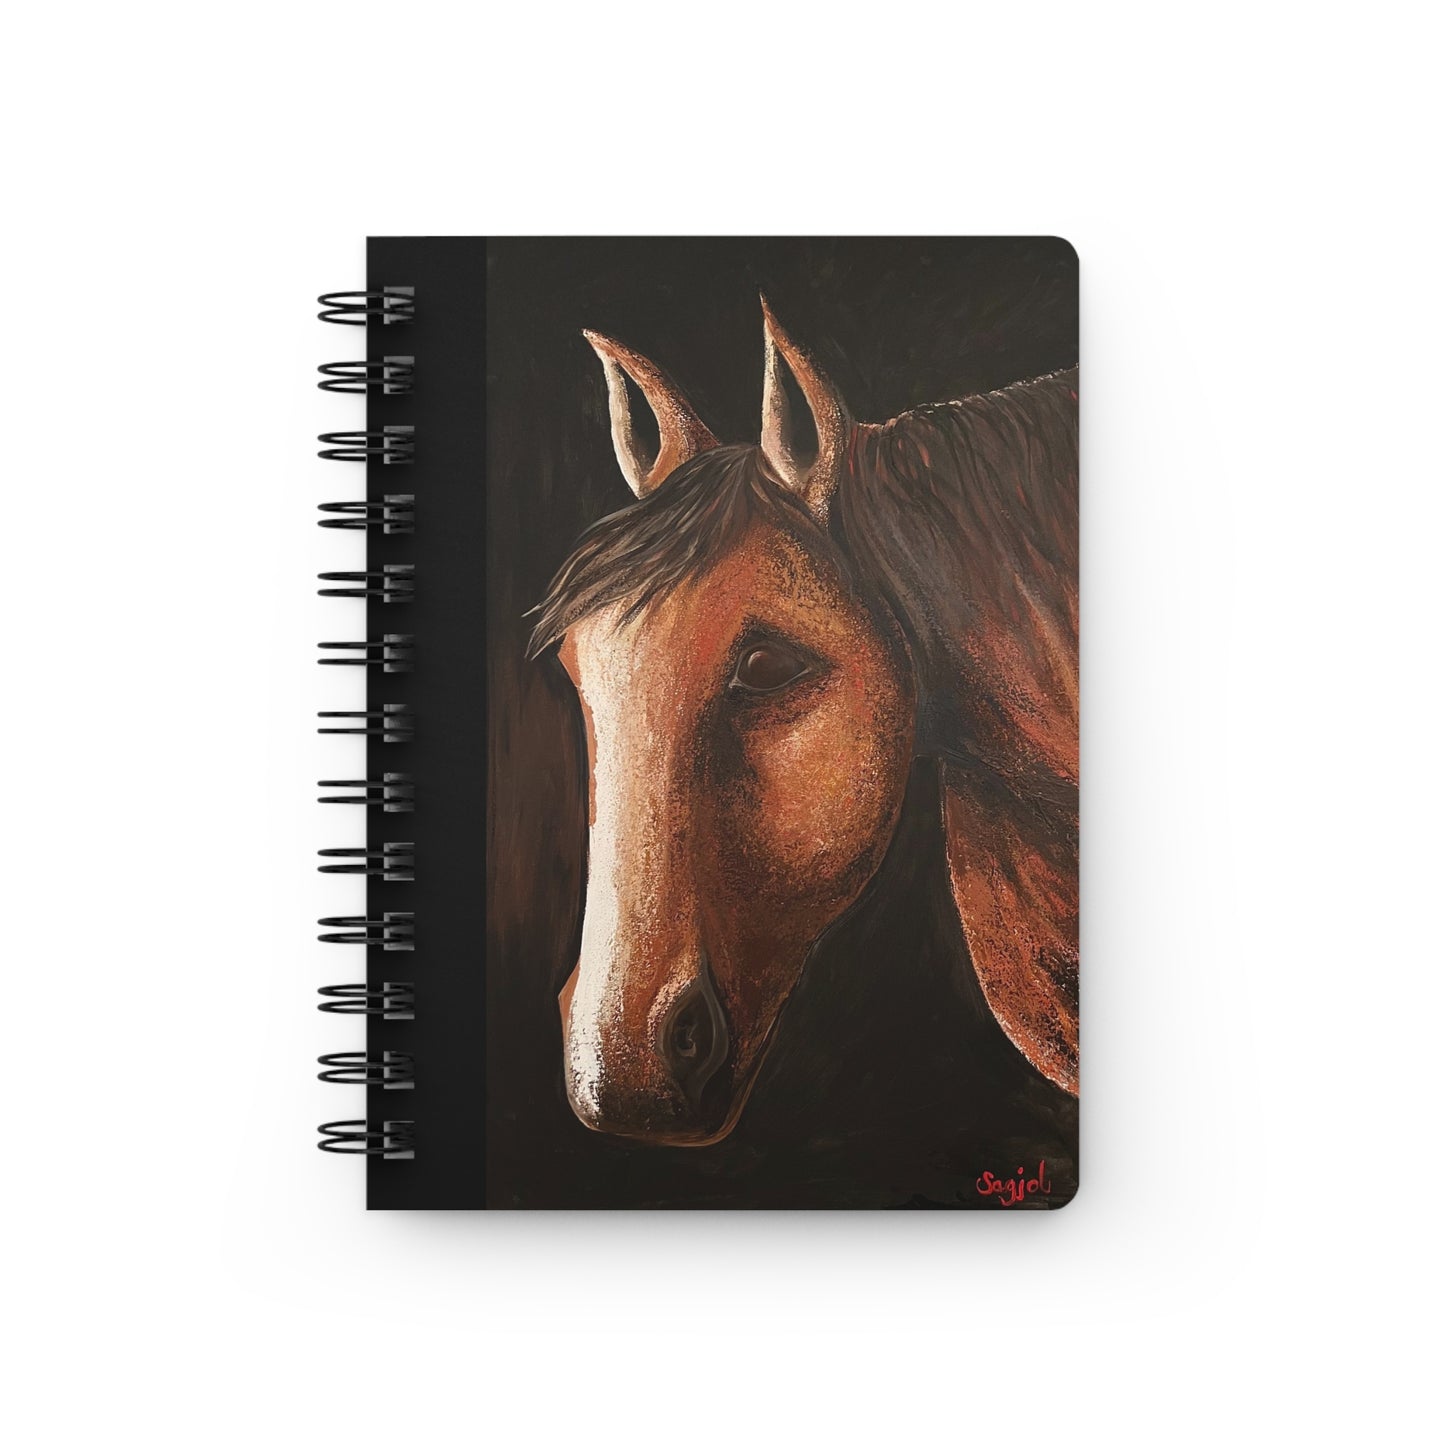 Spiral Bound Journal - Journal - Equestrian Note pad - Note pad - Spirit